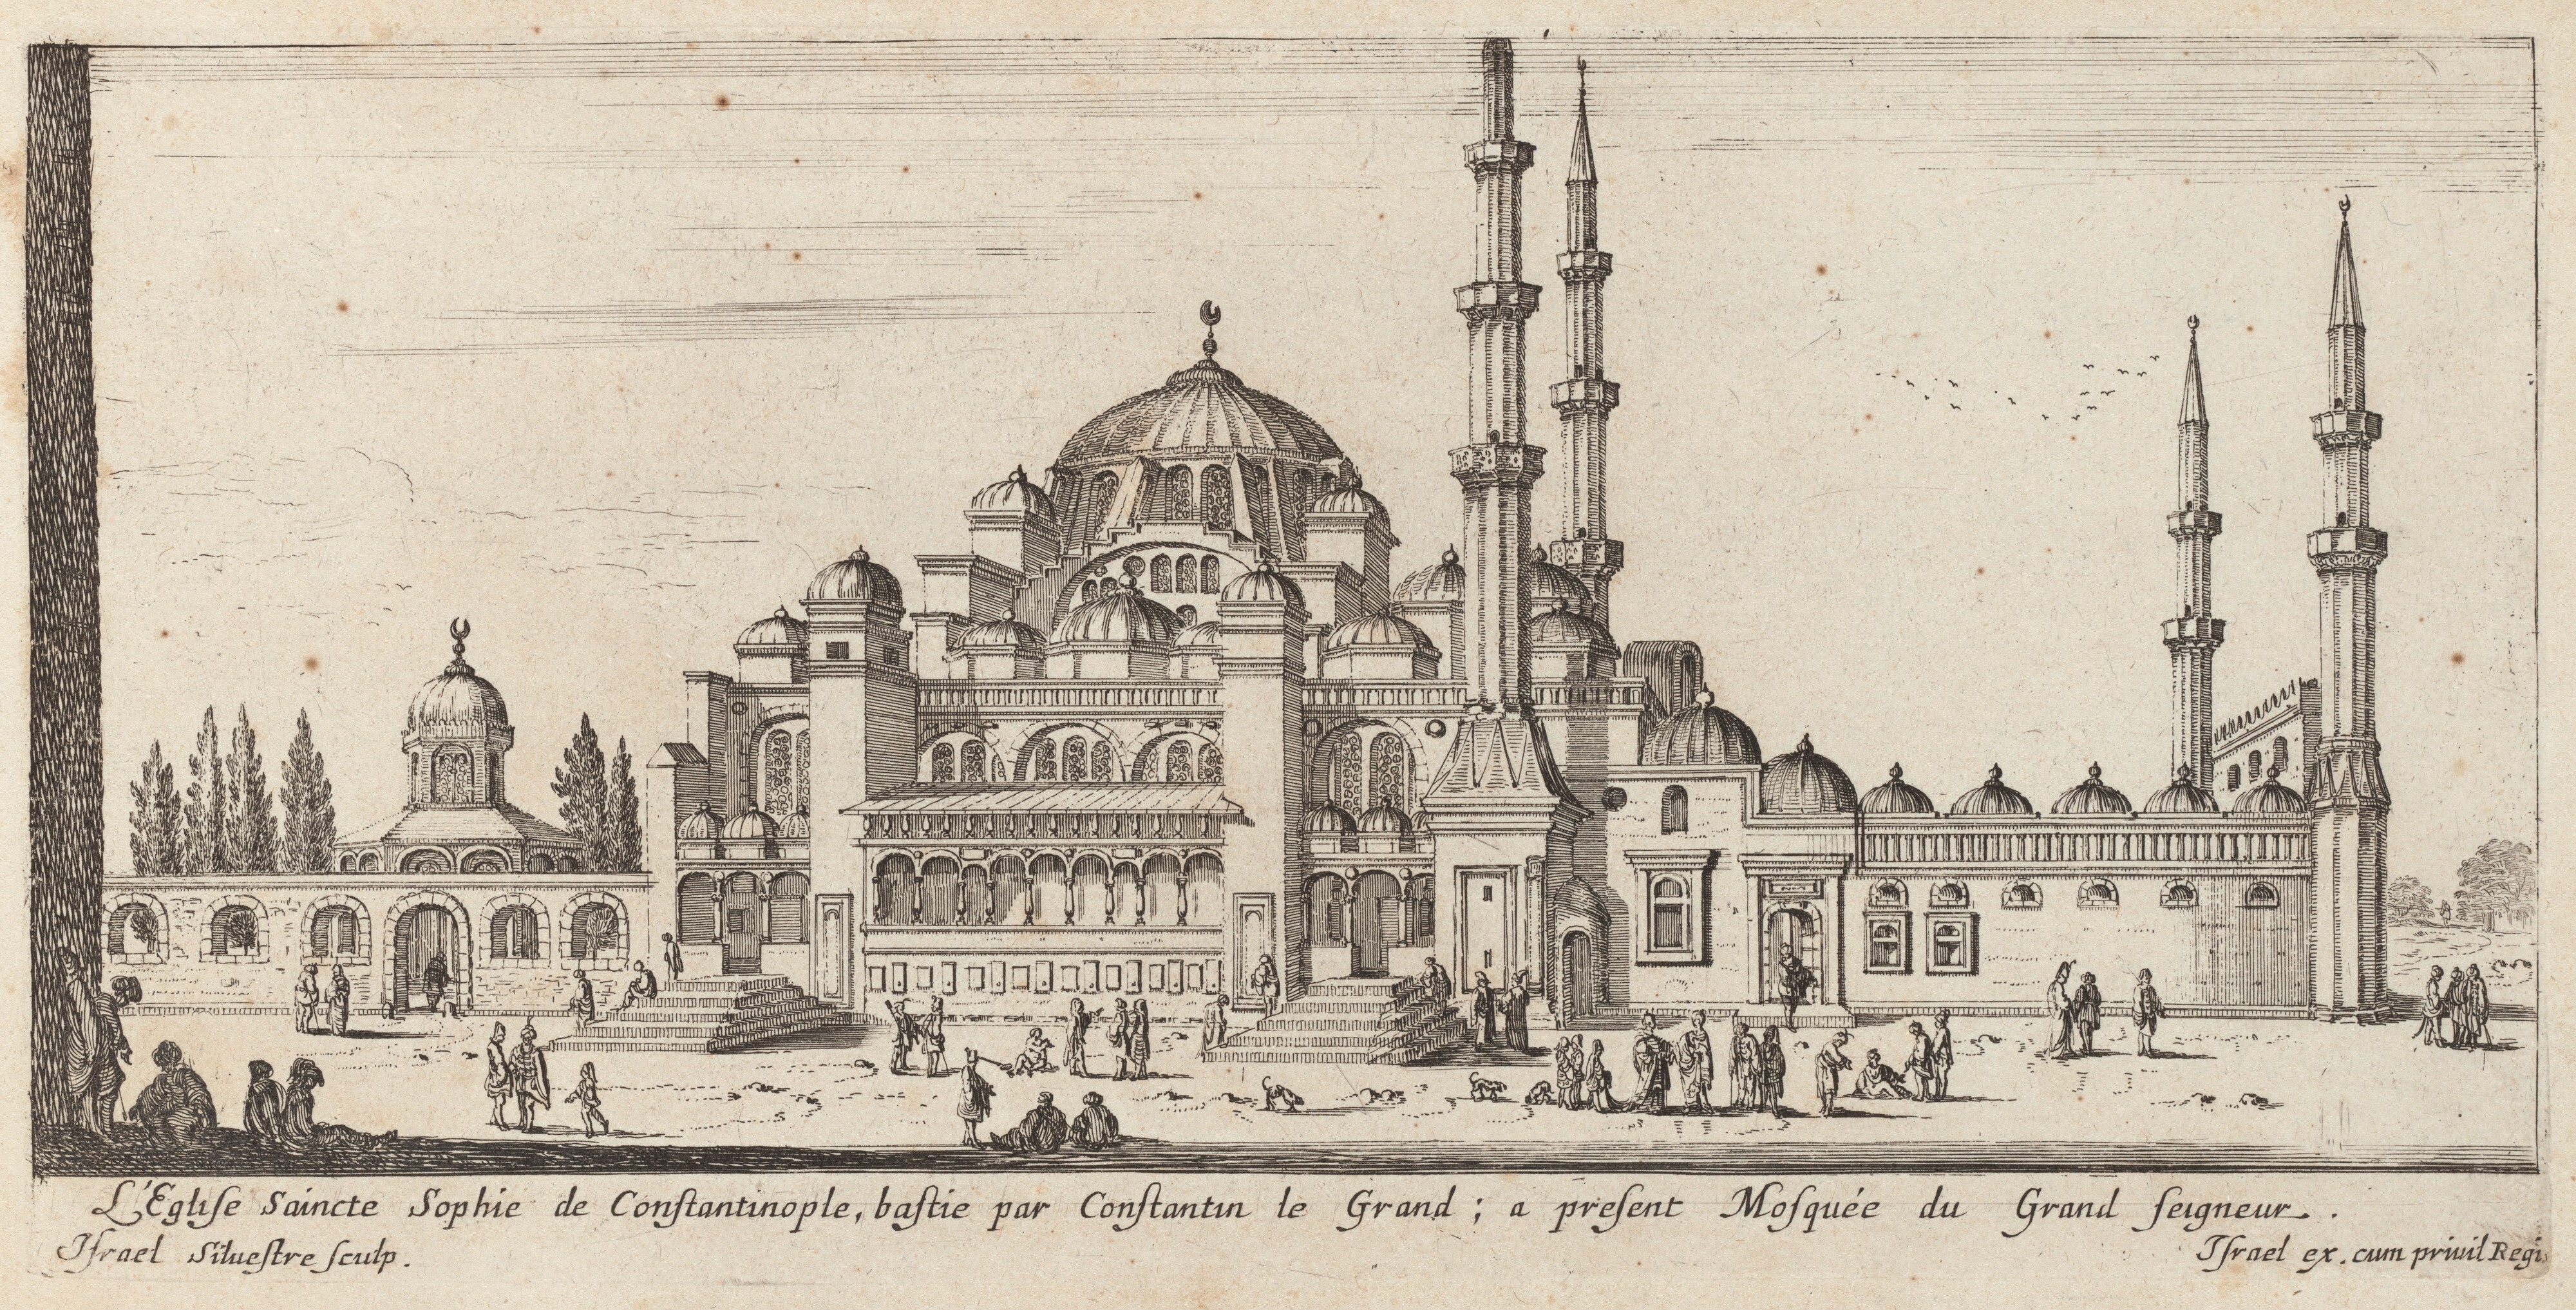 Israël Silvestre : L'Eglise Saincte Sophie de Constantinople, bastie par Constantin le Grand ; à présent Mosquée du Grand seigneur.